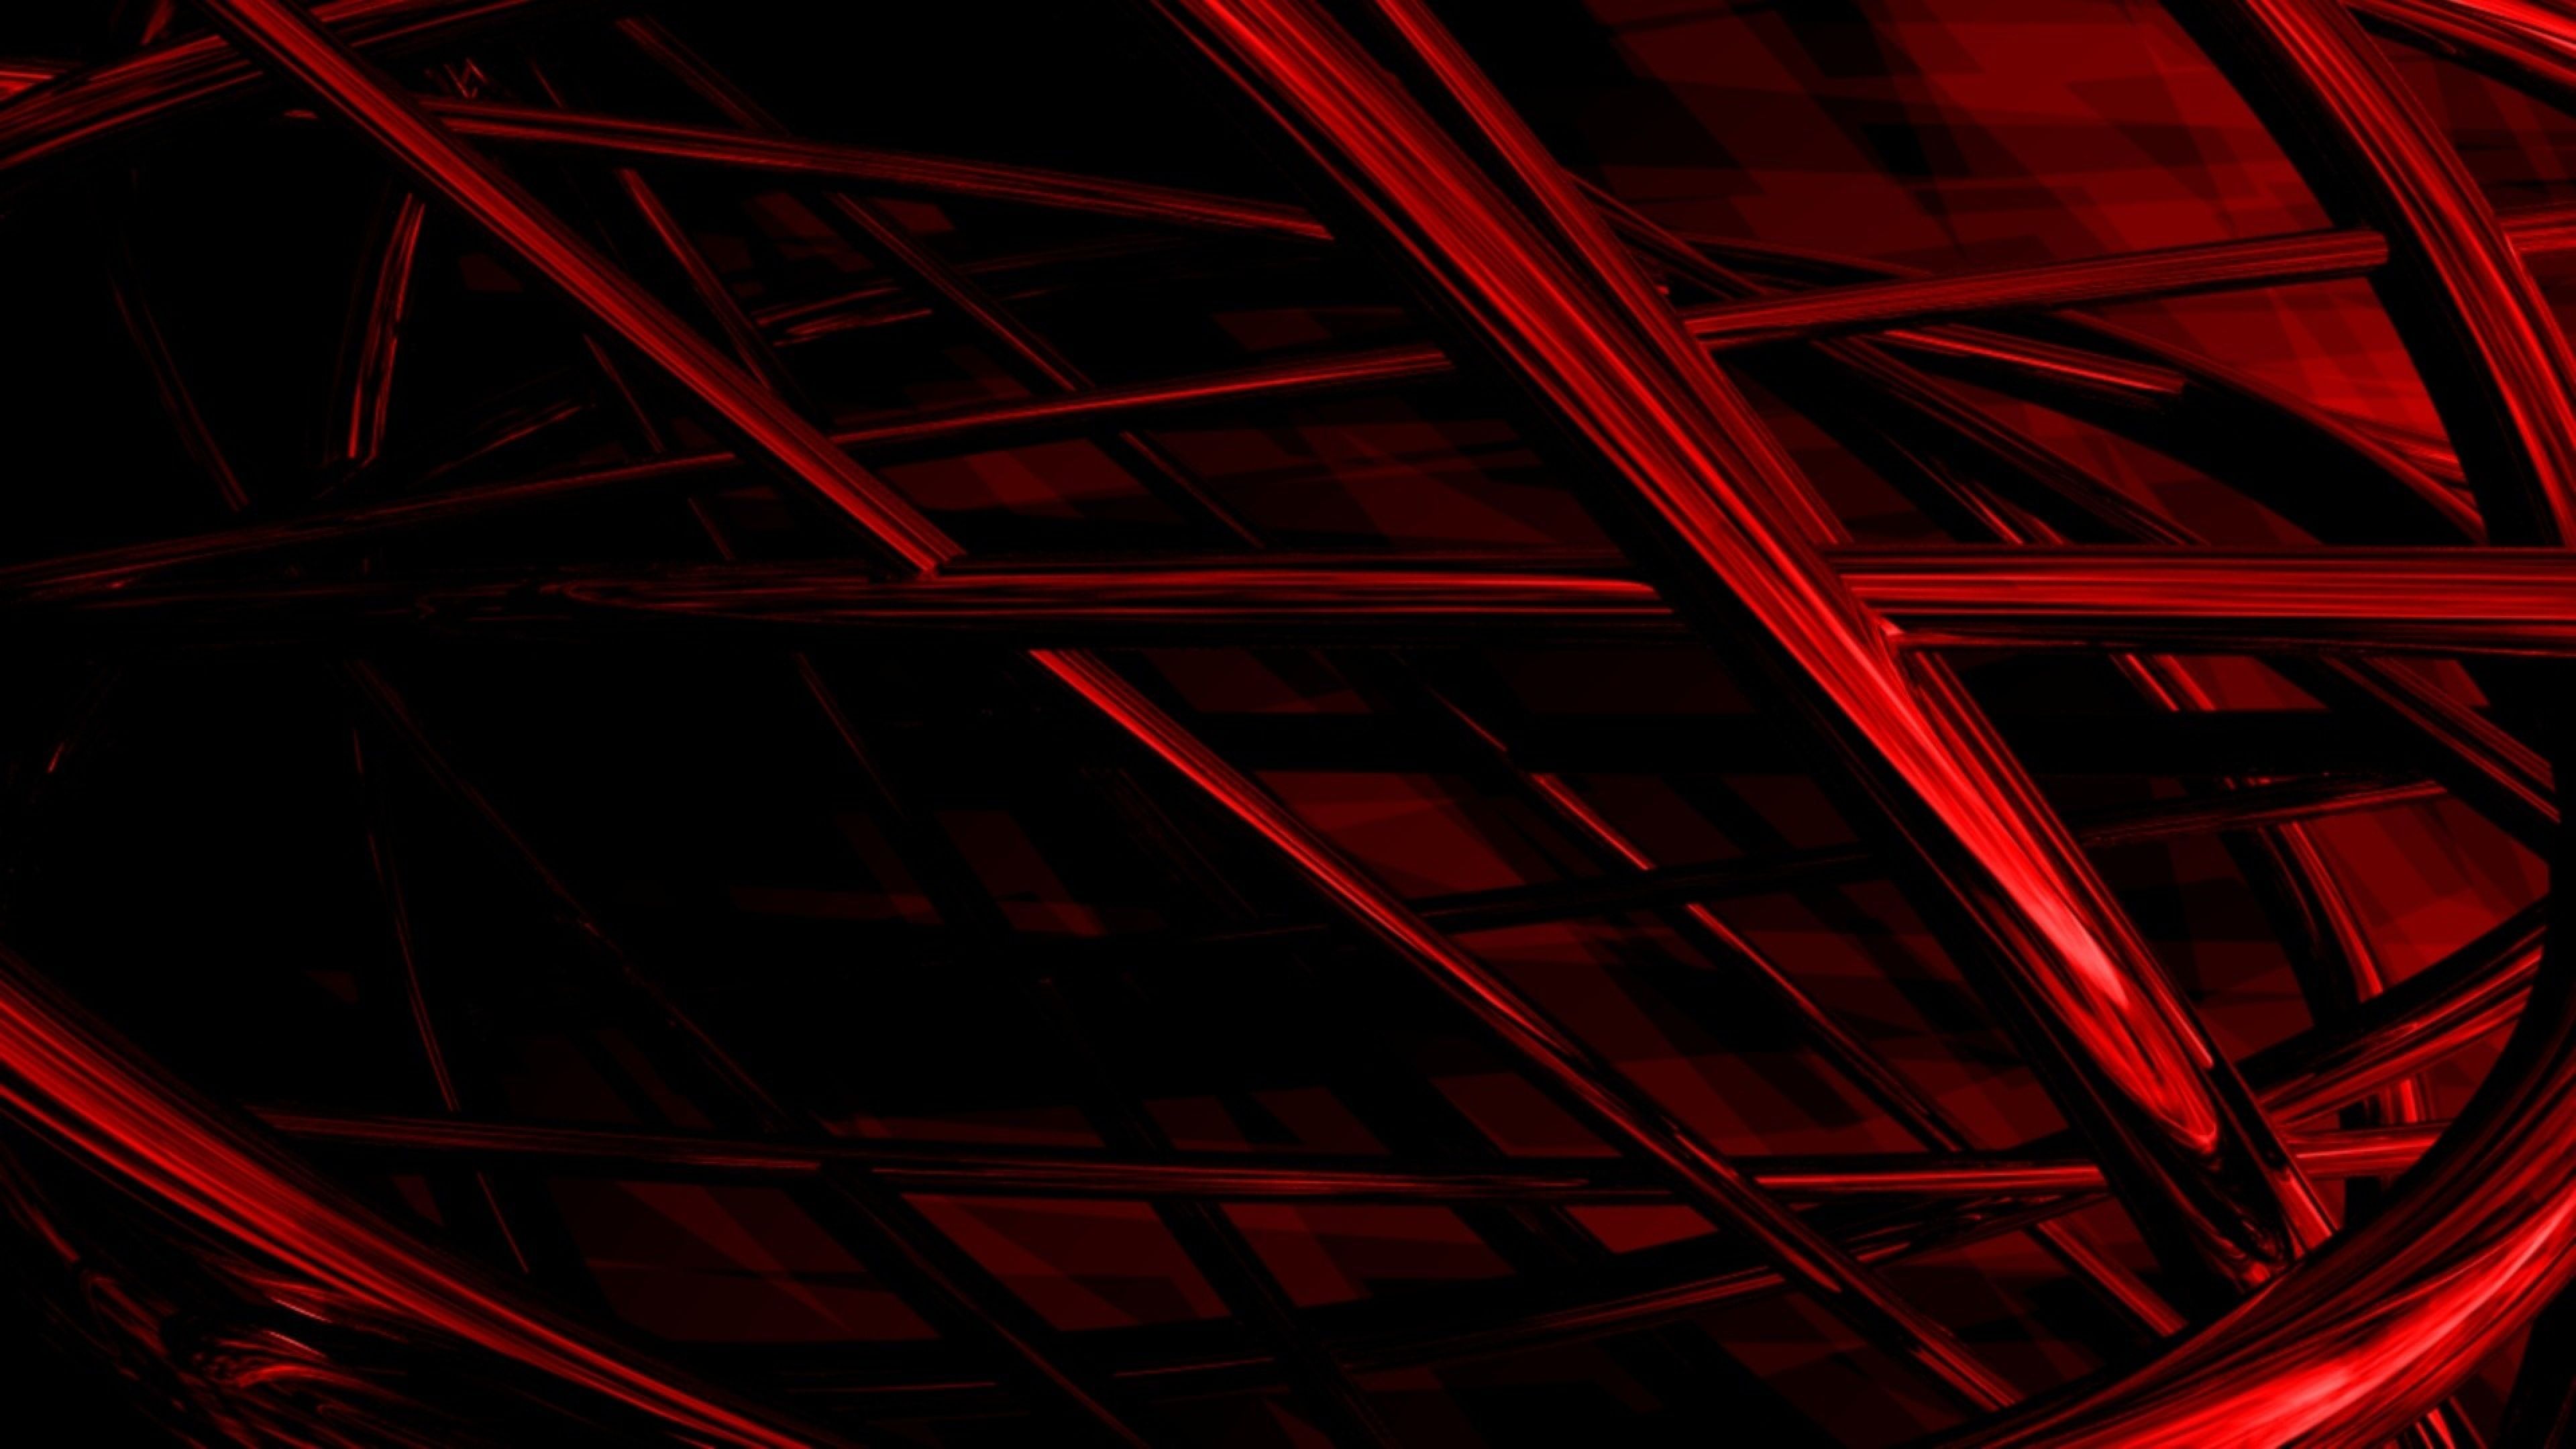 Với Red 4K Wallpapers, bạn sẽ được thử nghiệm khả năng của màn hình 4K và trải nghiệm vẻ đẹp của những hình nền đỏ rực sắc. Tạo không gian làm việc và giải trí đặc biệt với những hình nền này trên thiết bị của mình!